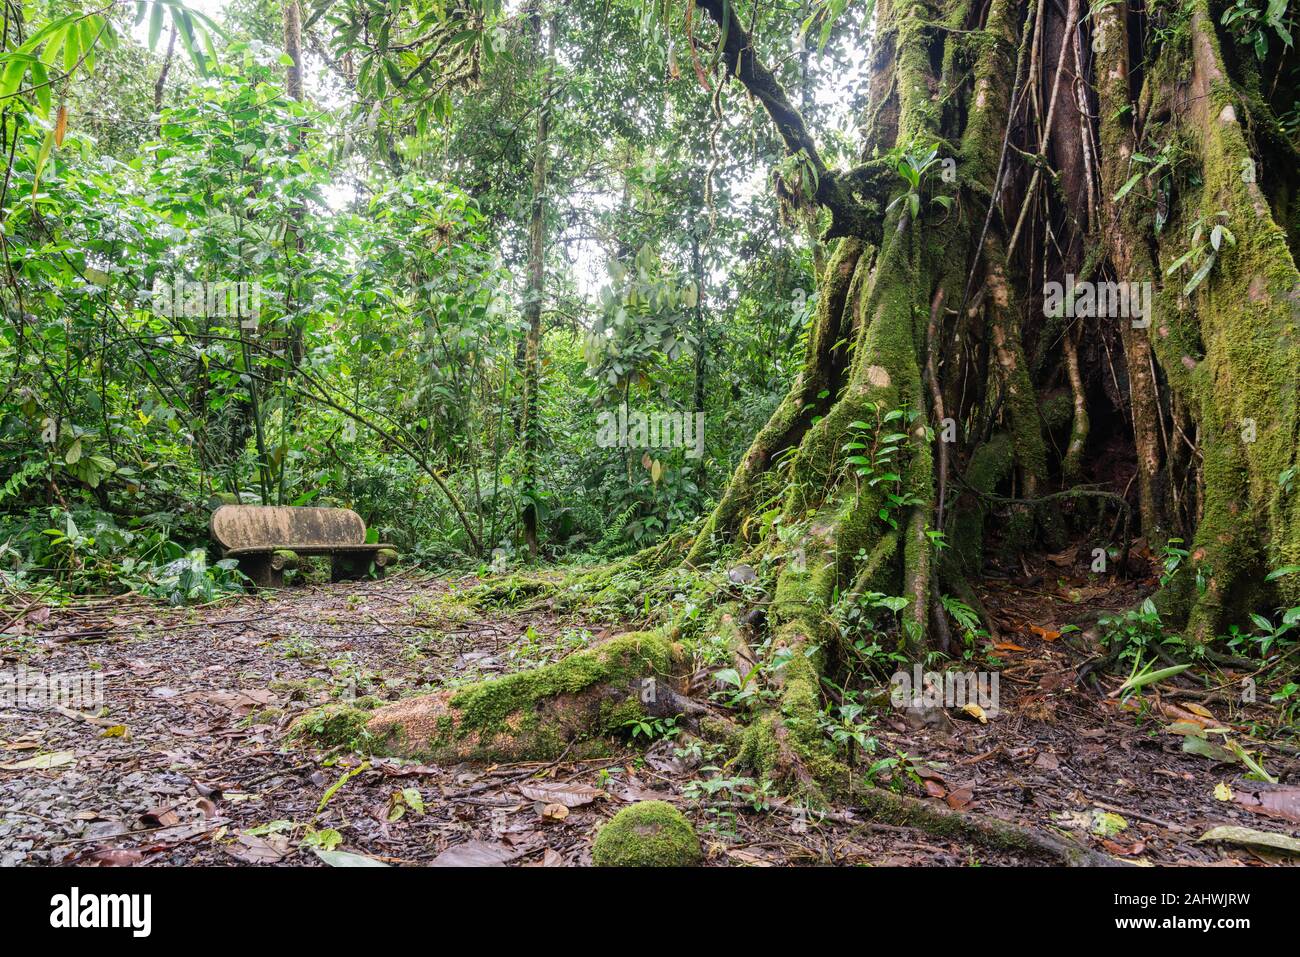 Banc à côté d'un grand arbre dans la forêt tropicale. Catarata Del Toro, Costa Rica. Banque D'Images